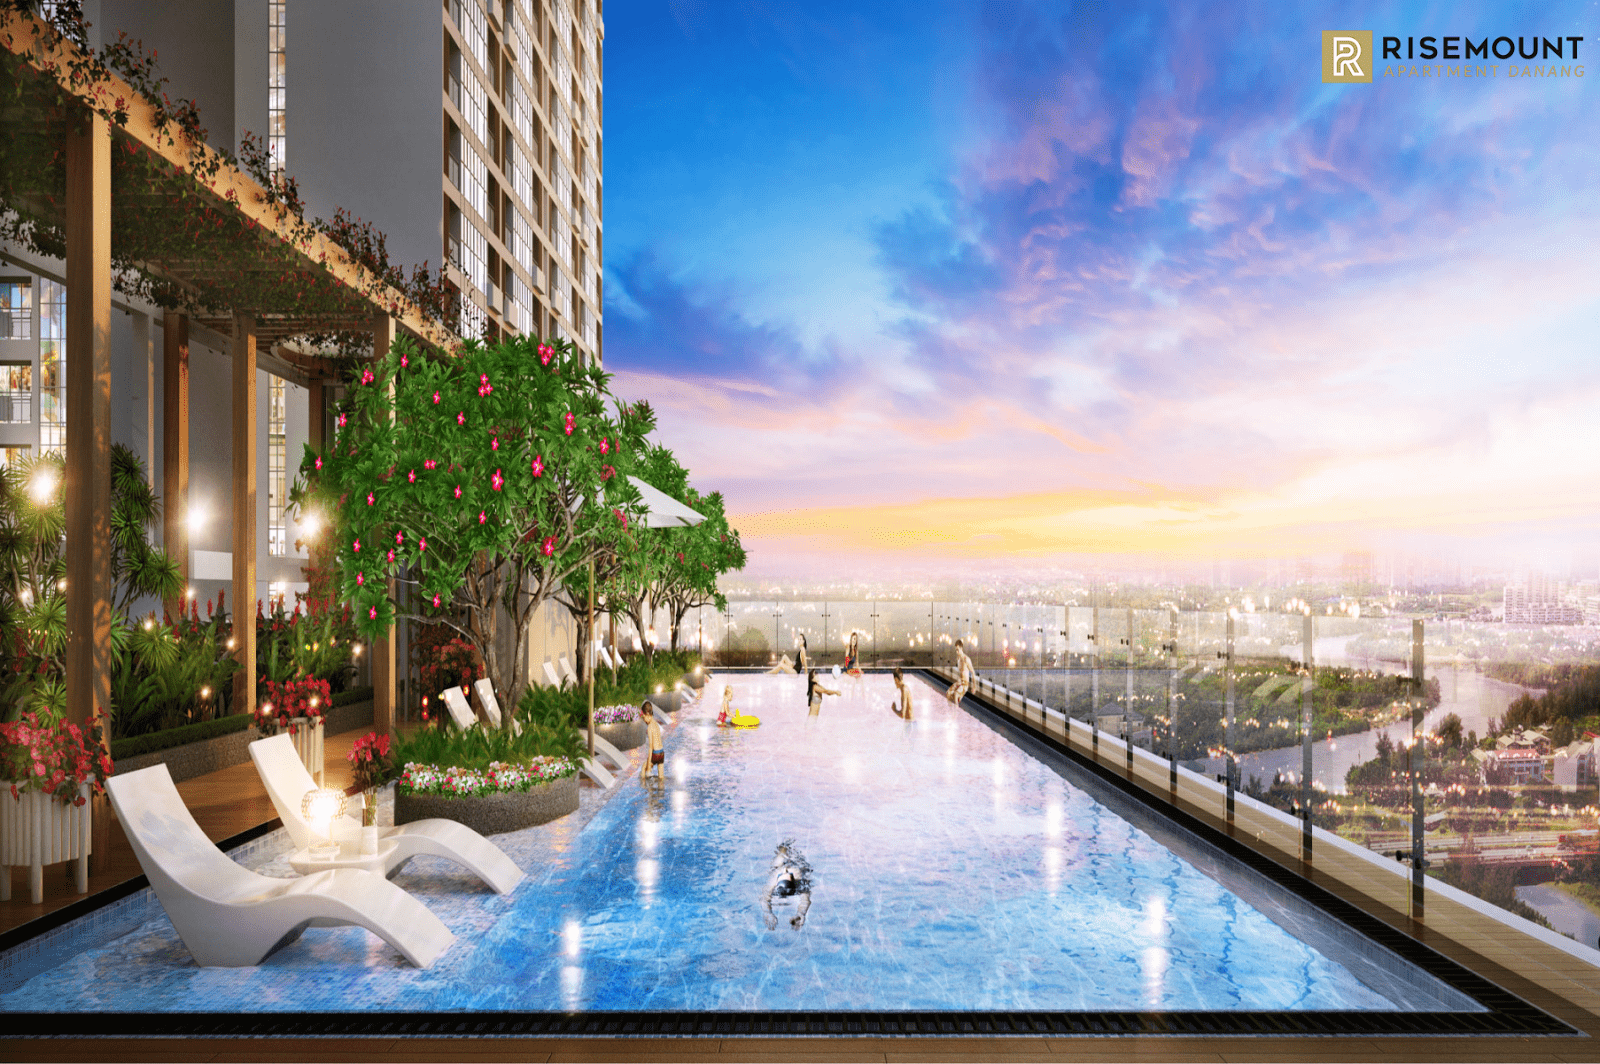 Bể bơi ngoài trời của Risemount Apartment Đà Nẵng